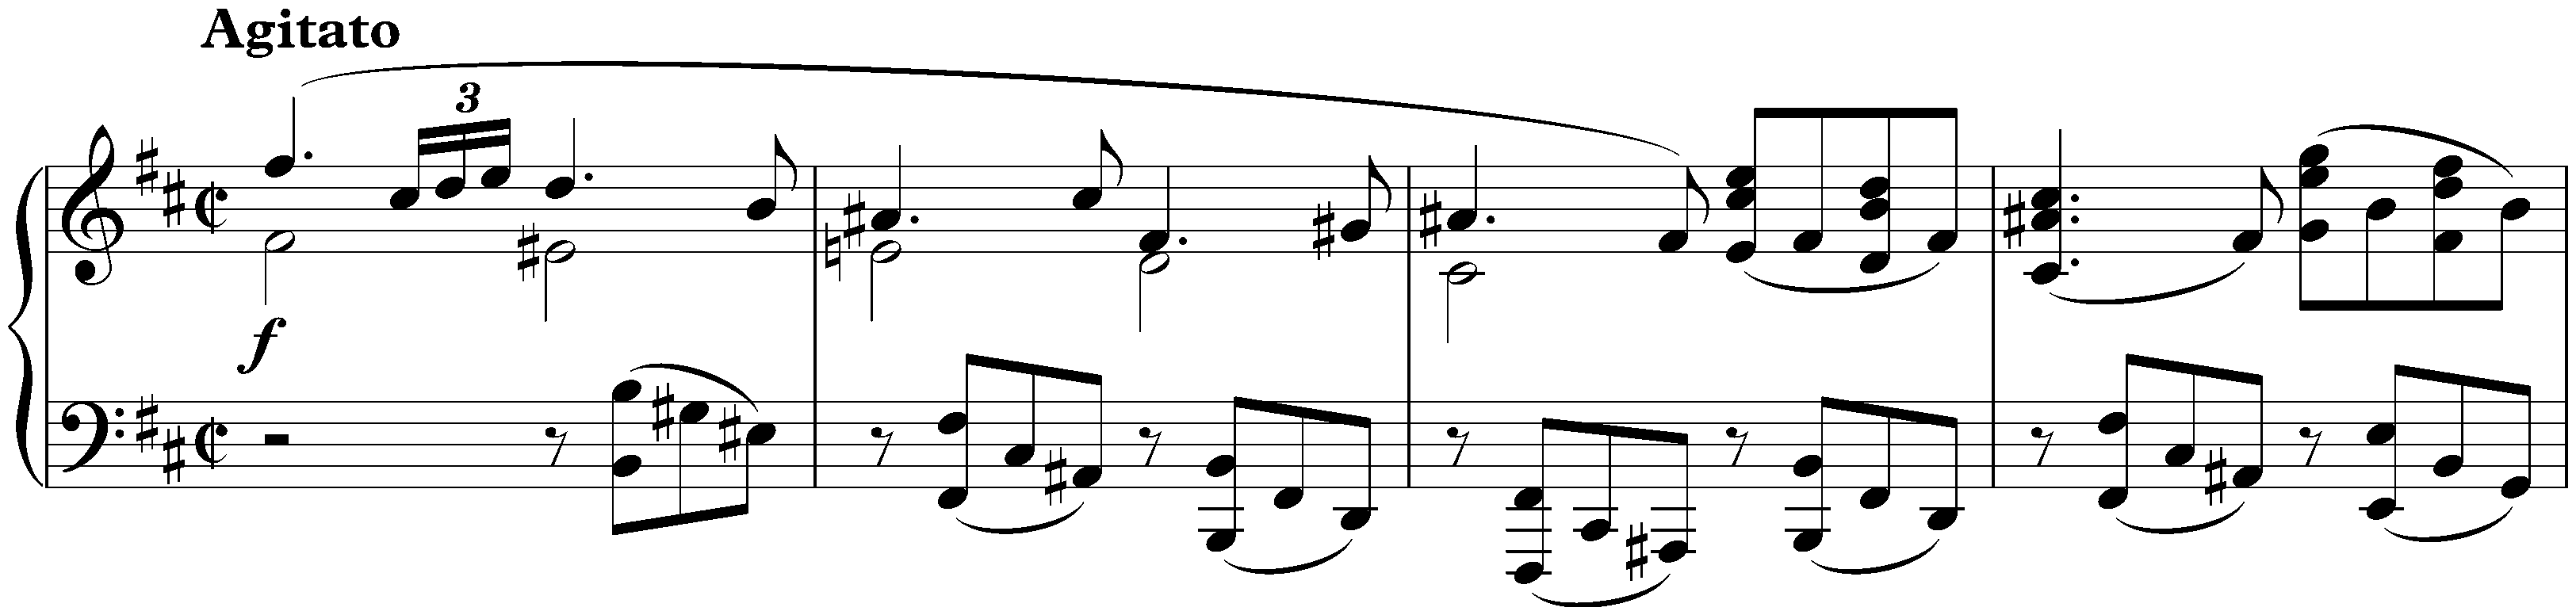 Two Rhapsodies, op. 79; 1. B minor